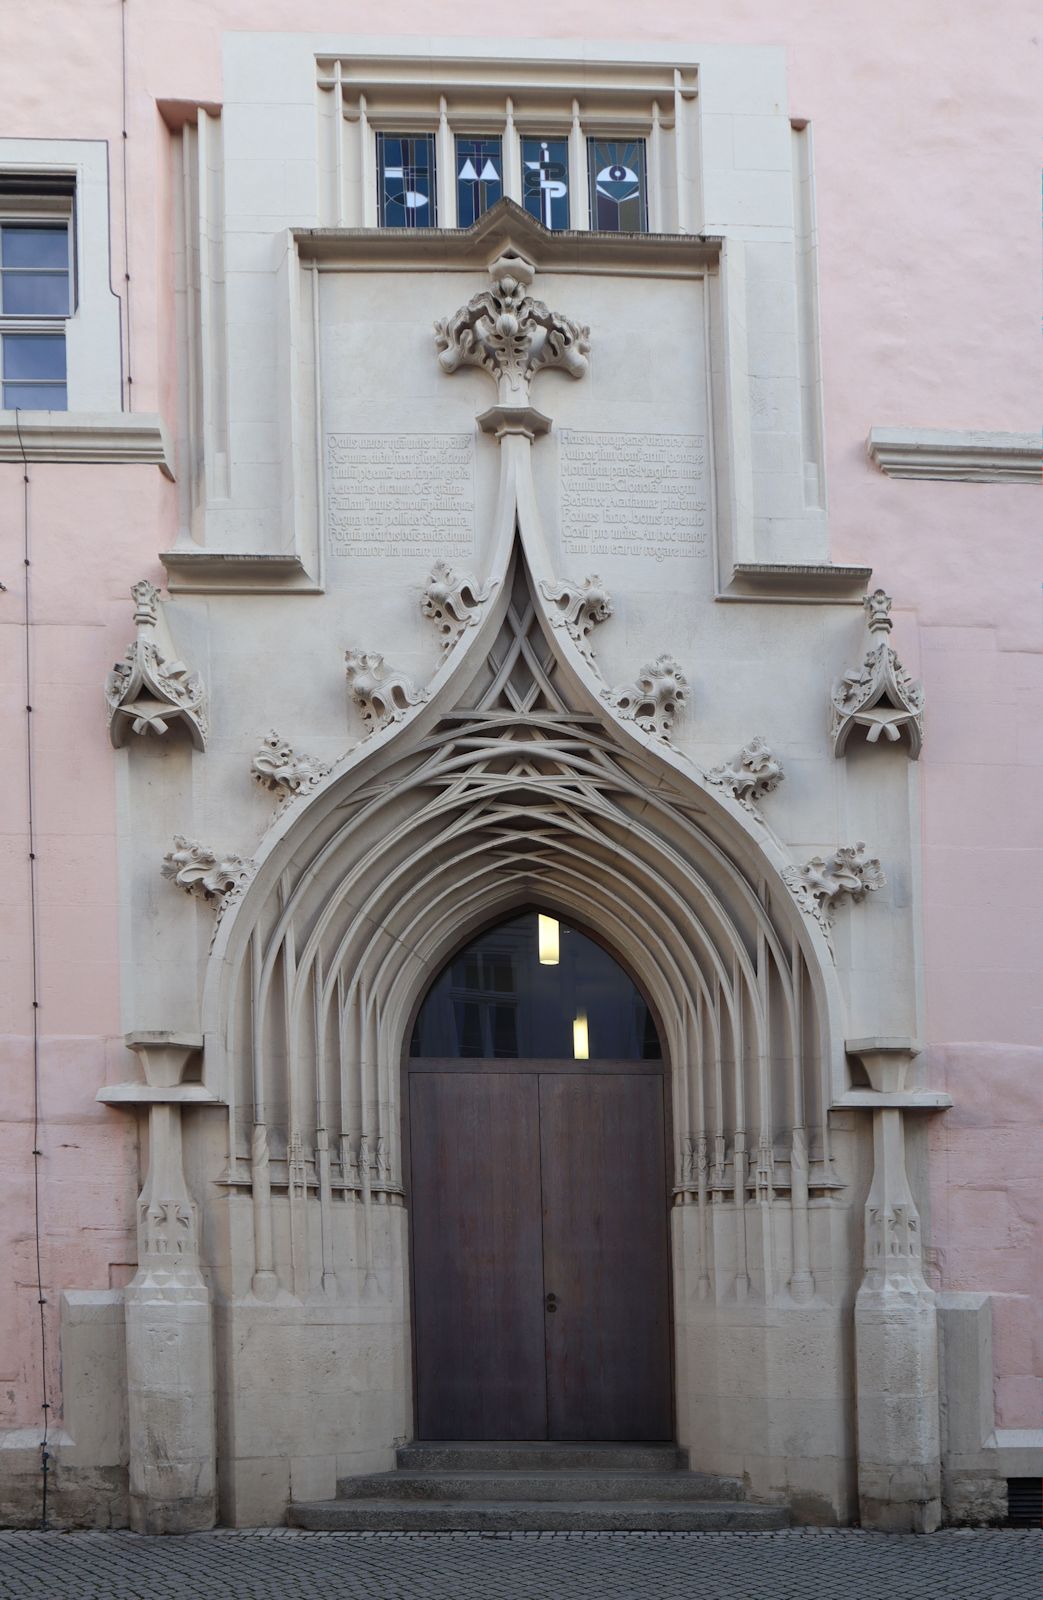 Portal des Collegiums Maius in Erfurt, heute Sitz des Landeskirchenamtes der Evangelisch-lutherischen Kirche